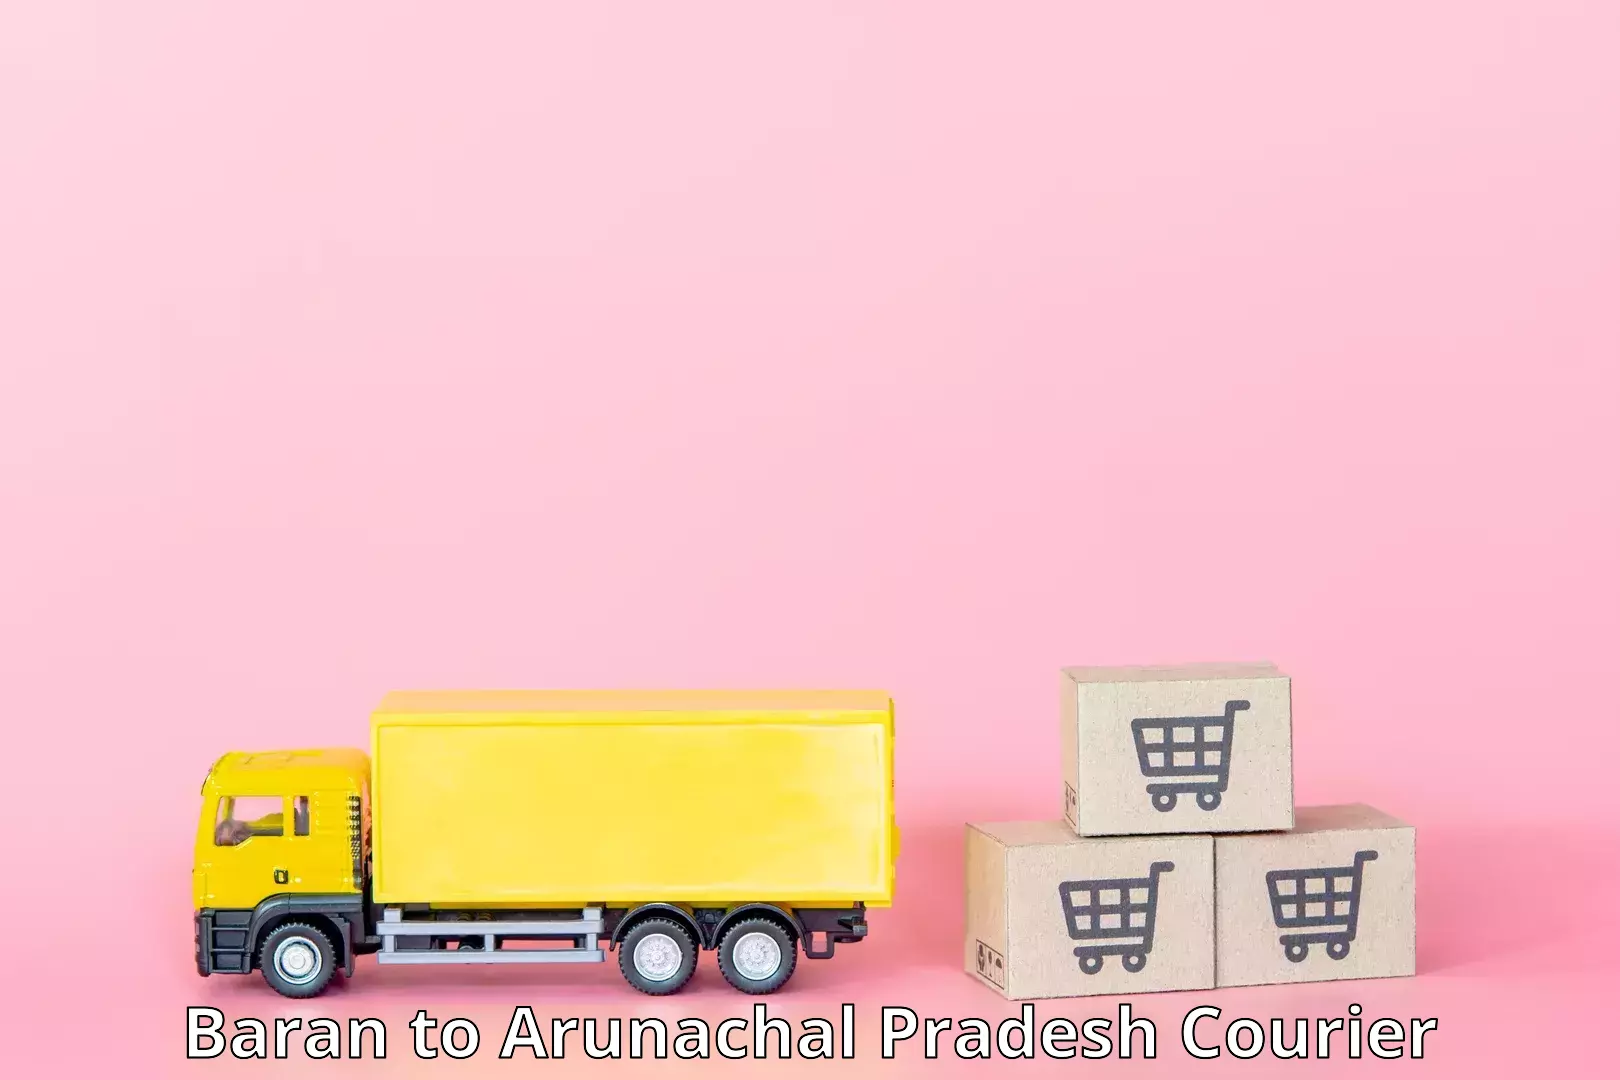 Efficient courier operations Baran to Arunachal Pradesh